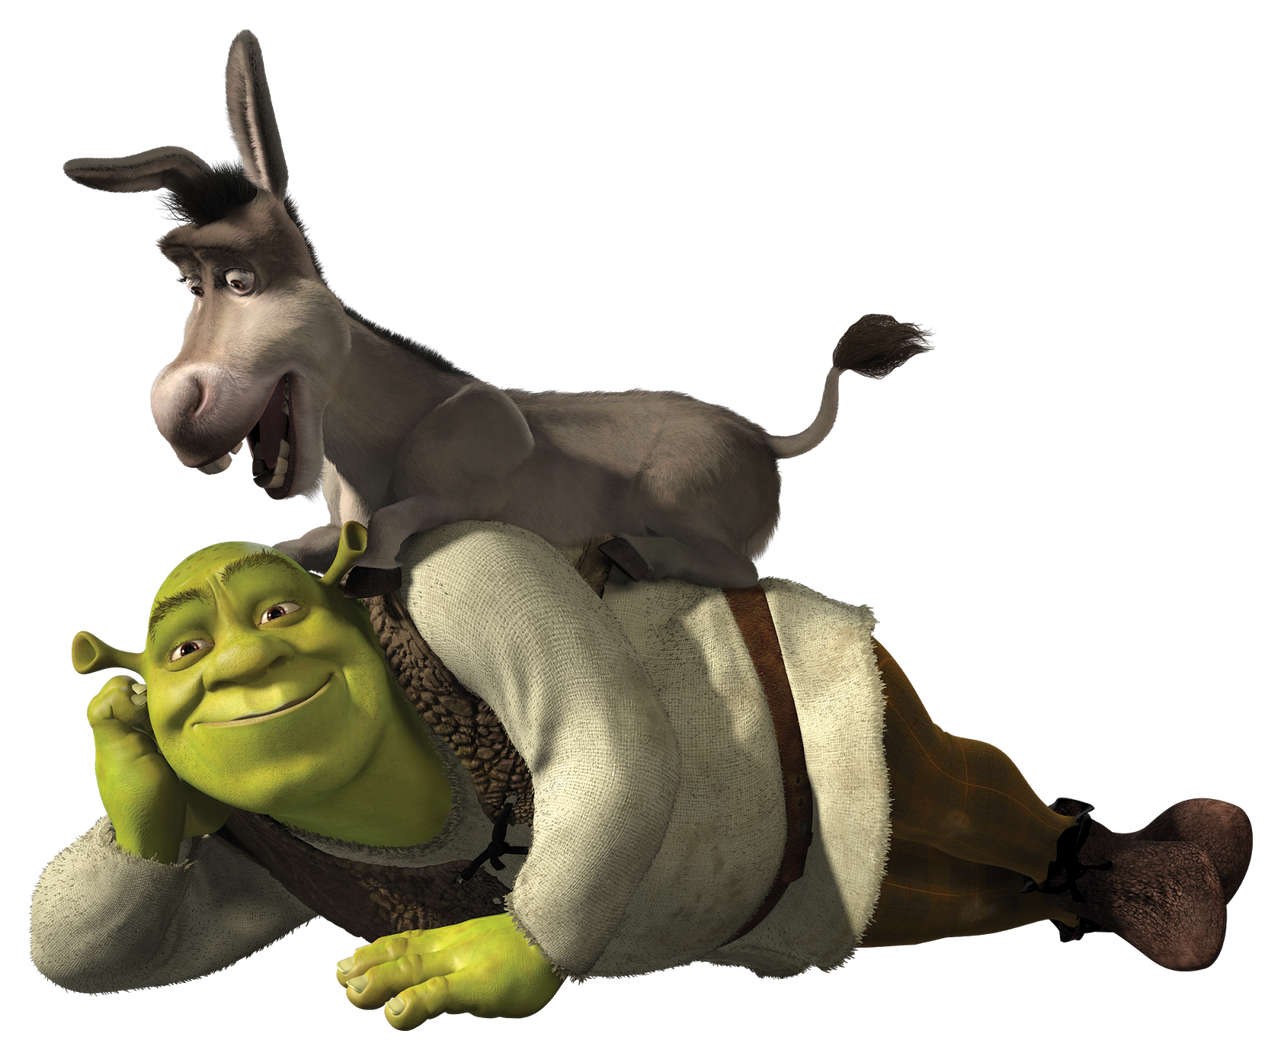 Shrek and Donkey (PNG) by DarkMoonAnimation on DeviantArt